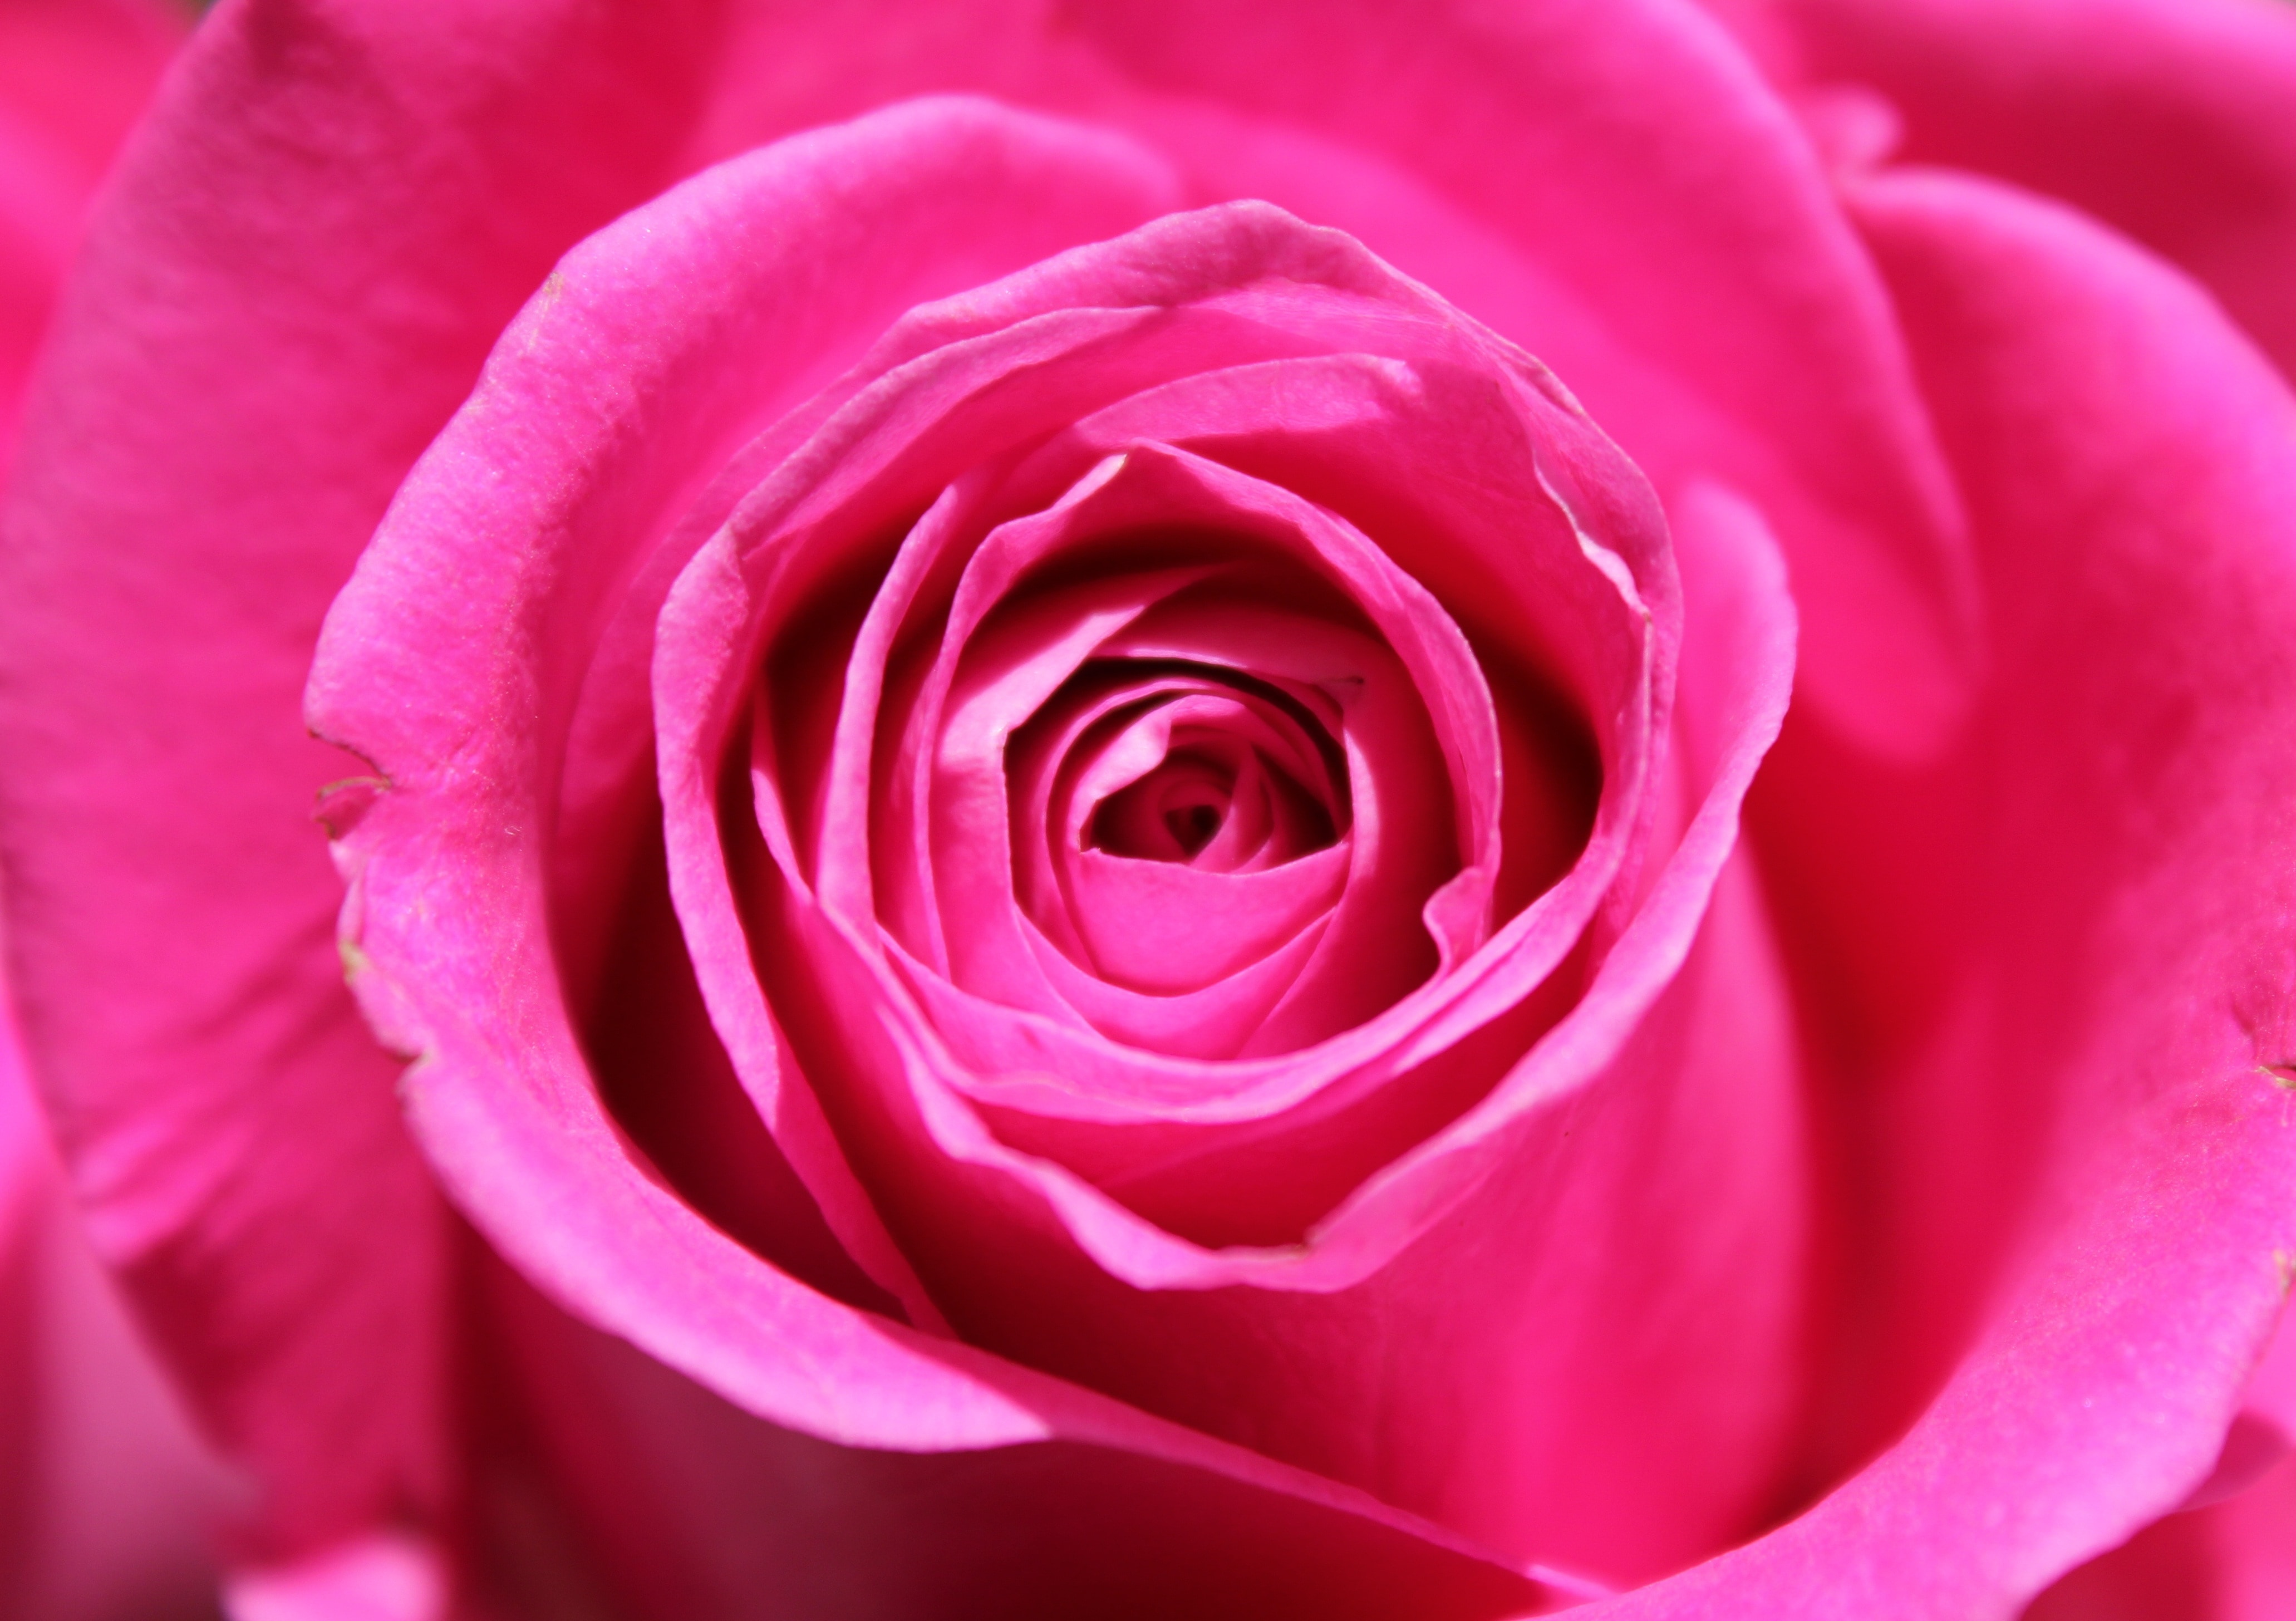 Nature, Flower, Rose, Love, Petal, Pink, flower, rose - flower